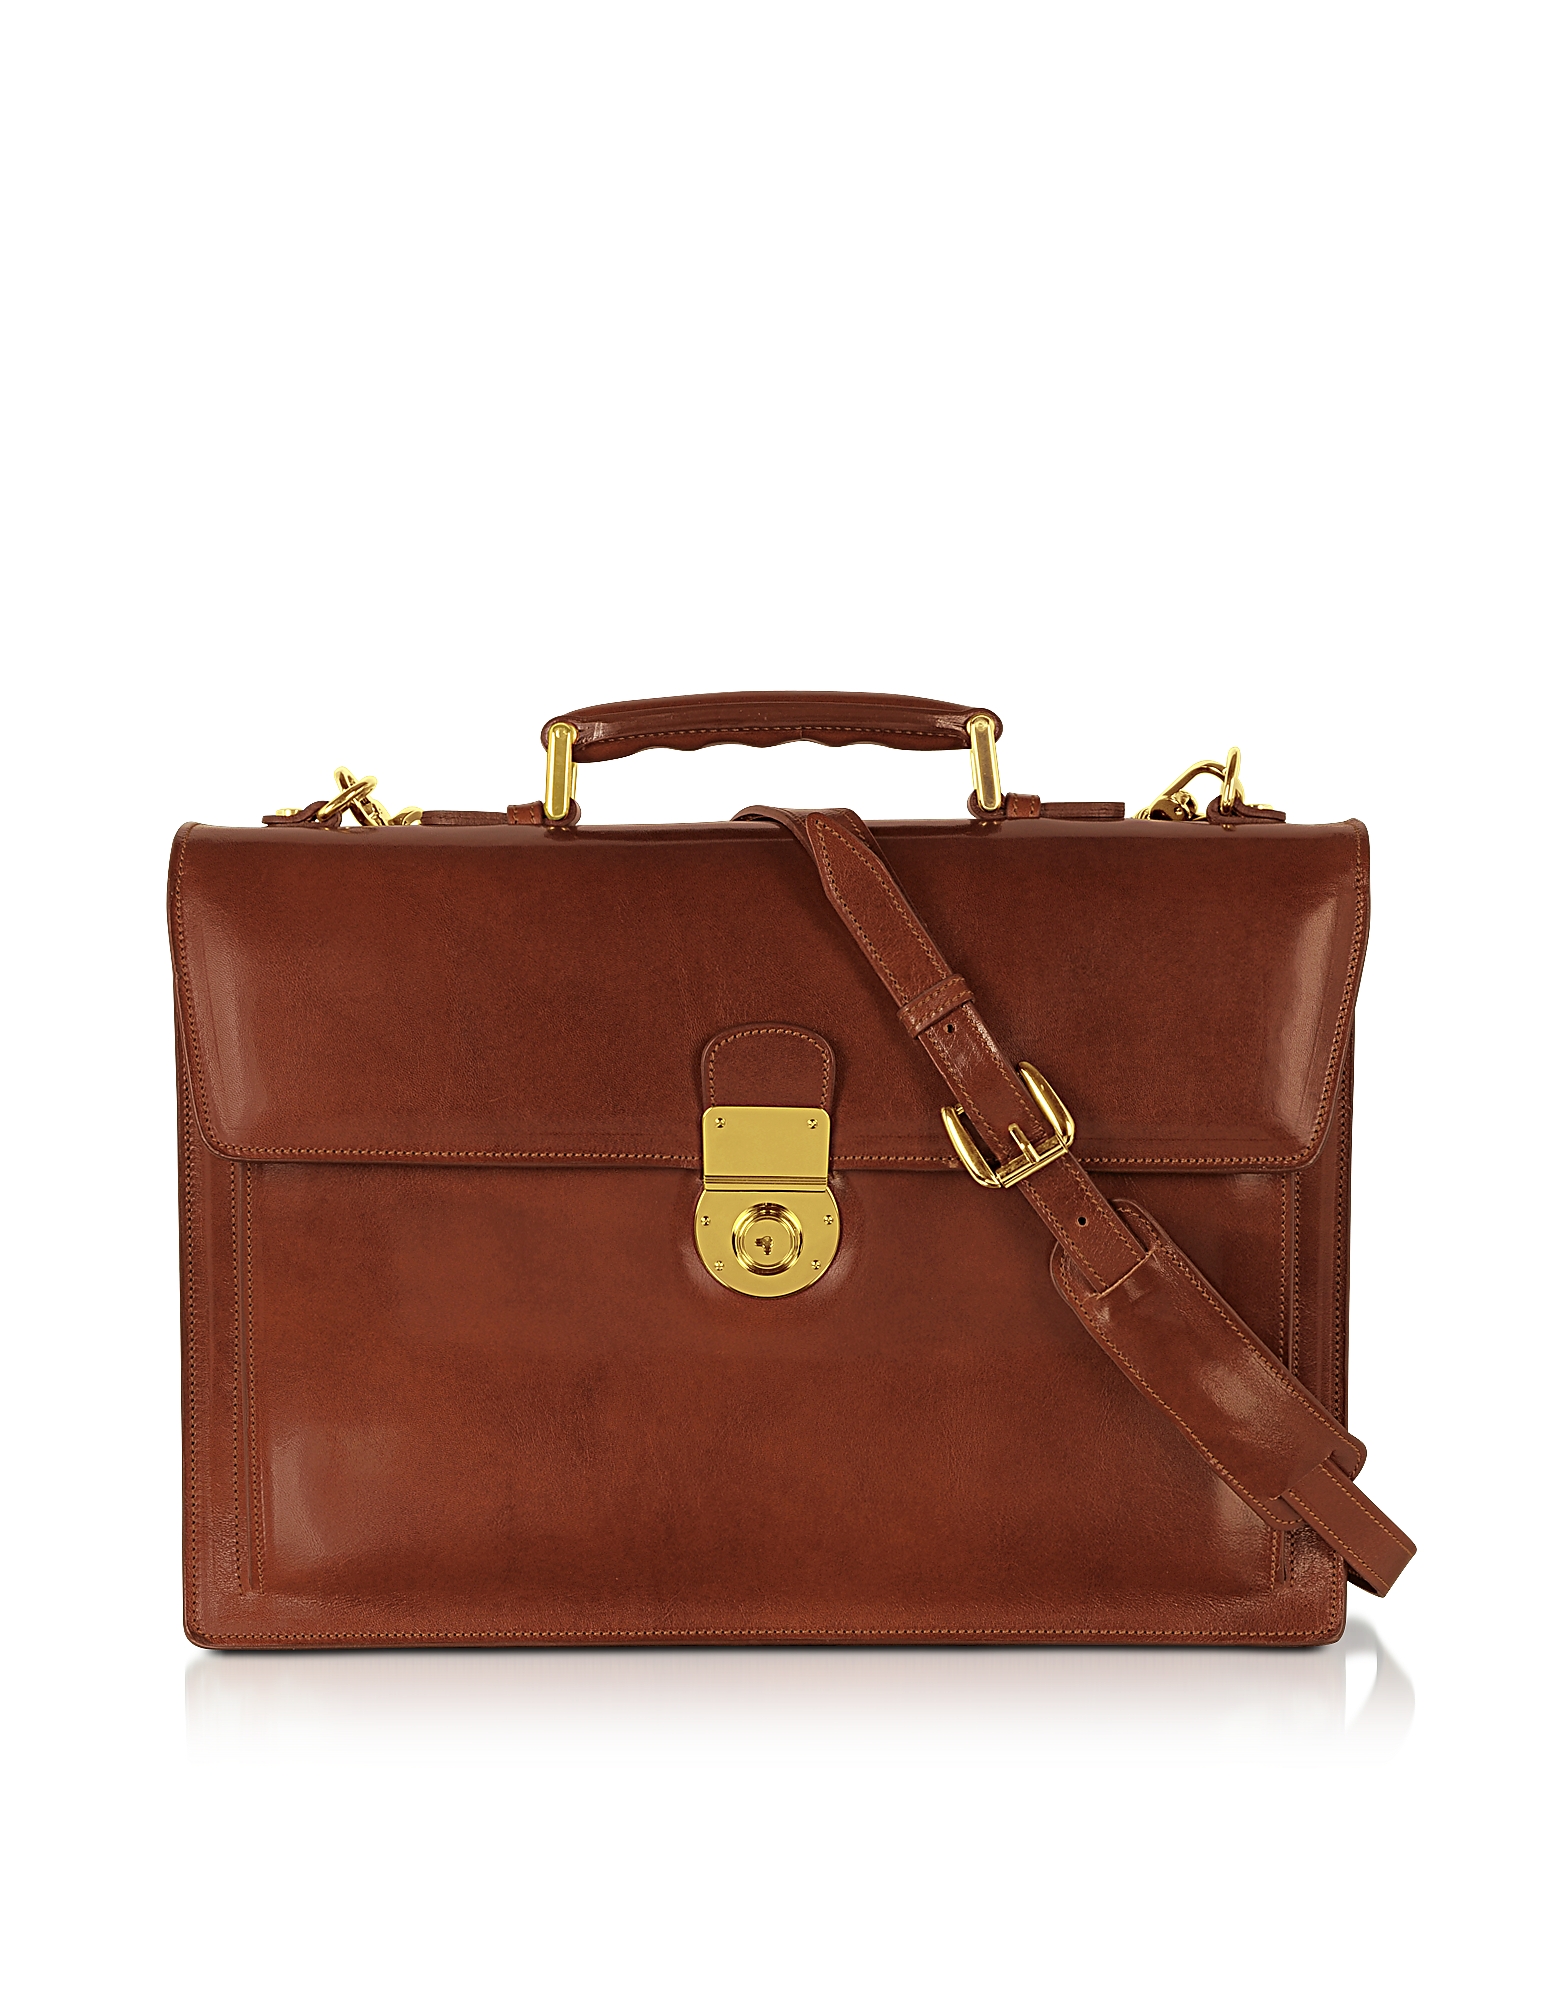 L.A.P.A. Designer Travel Bags, Classic Cognac Leather Briefcase